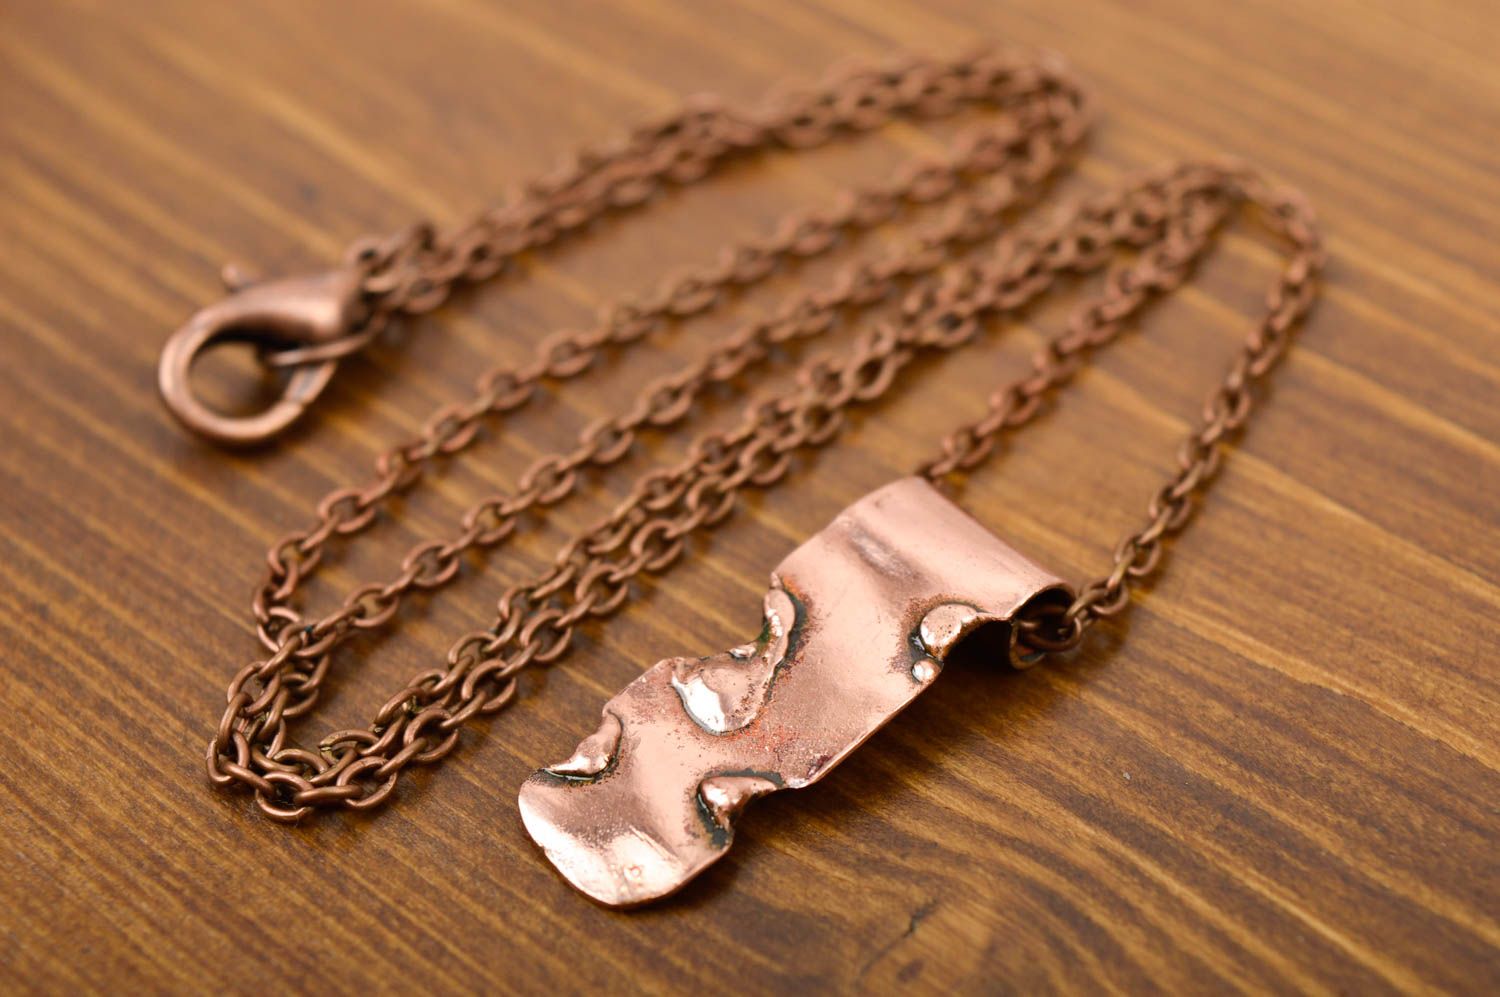 Stylish handmade metal pendant beautiful jewellery fashion trends small gifts photo 2